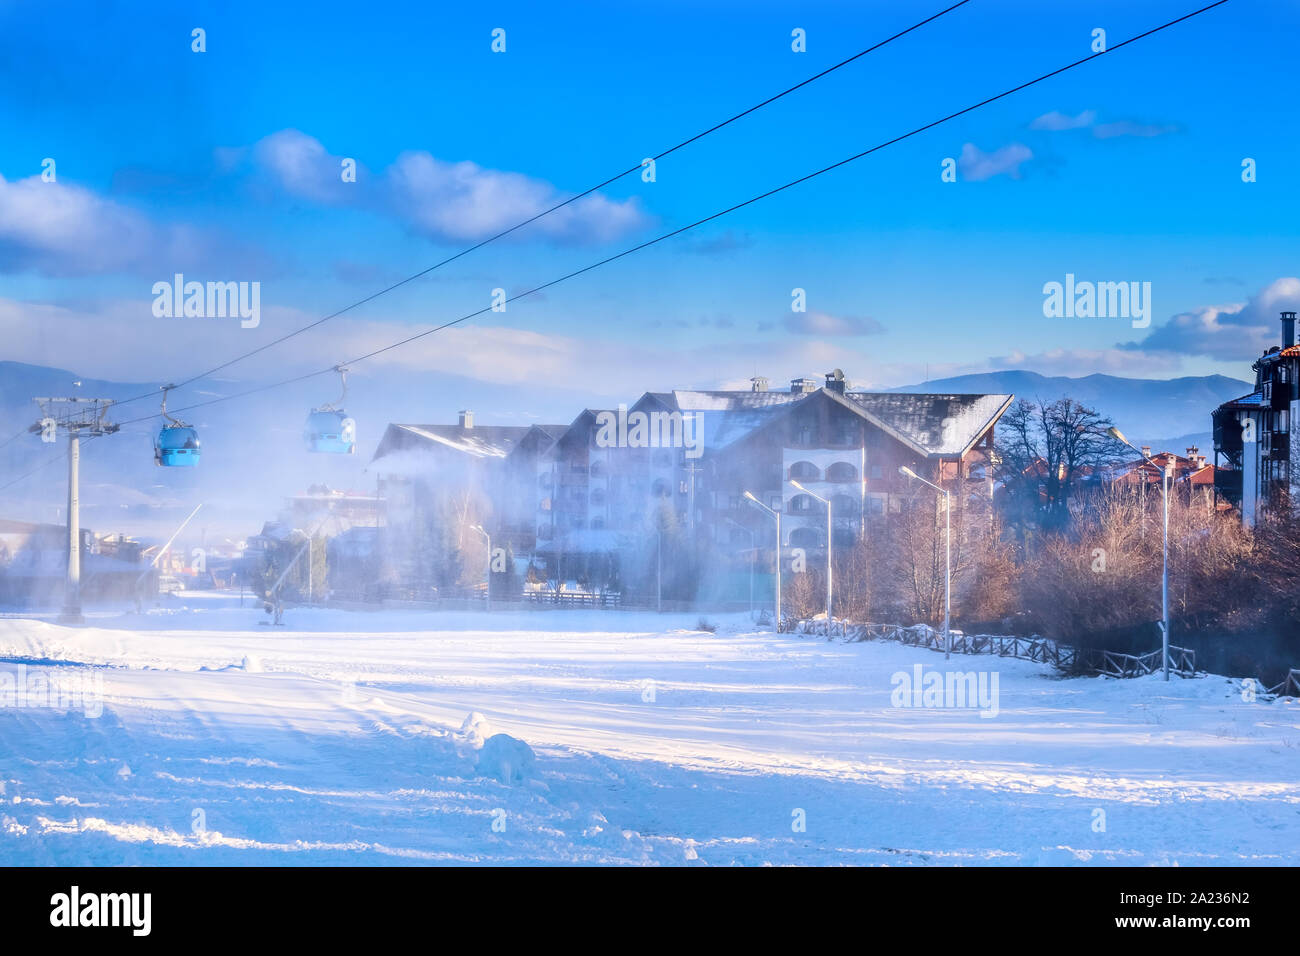 Bansko, Bulgarien Winter Skigebiet mit Skipiste, Kabinen und Schneekanonen Stockfoto